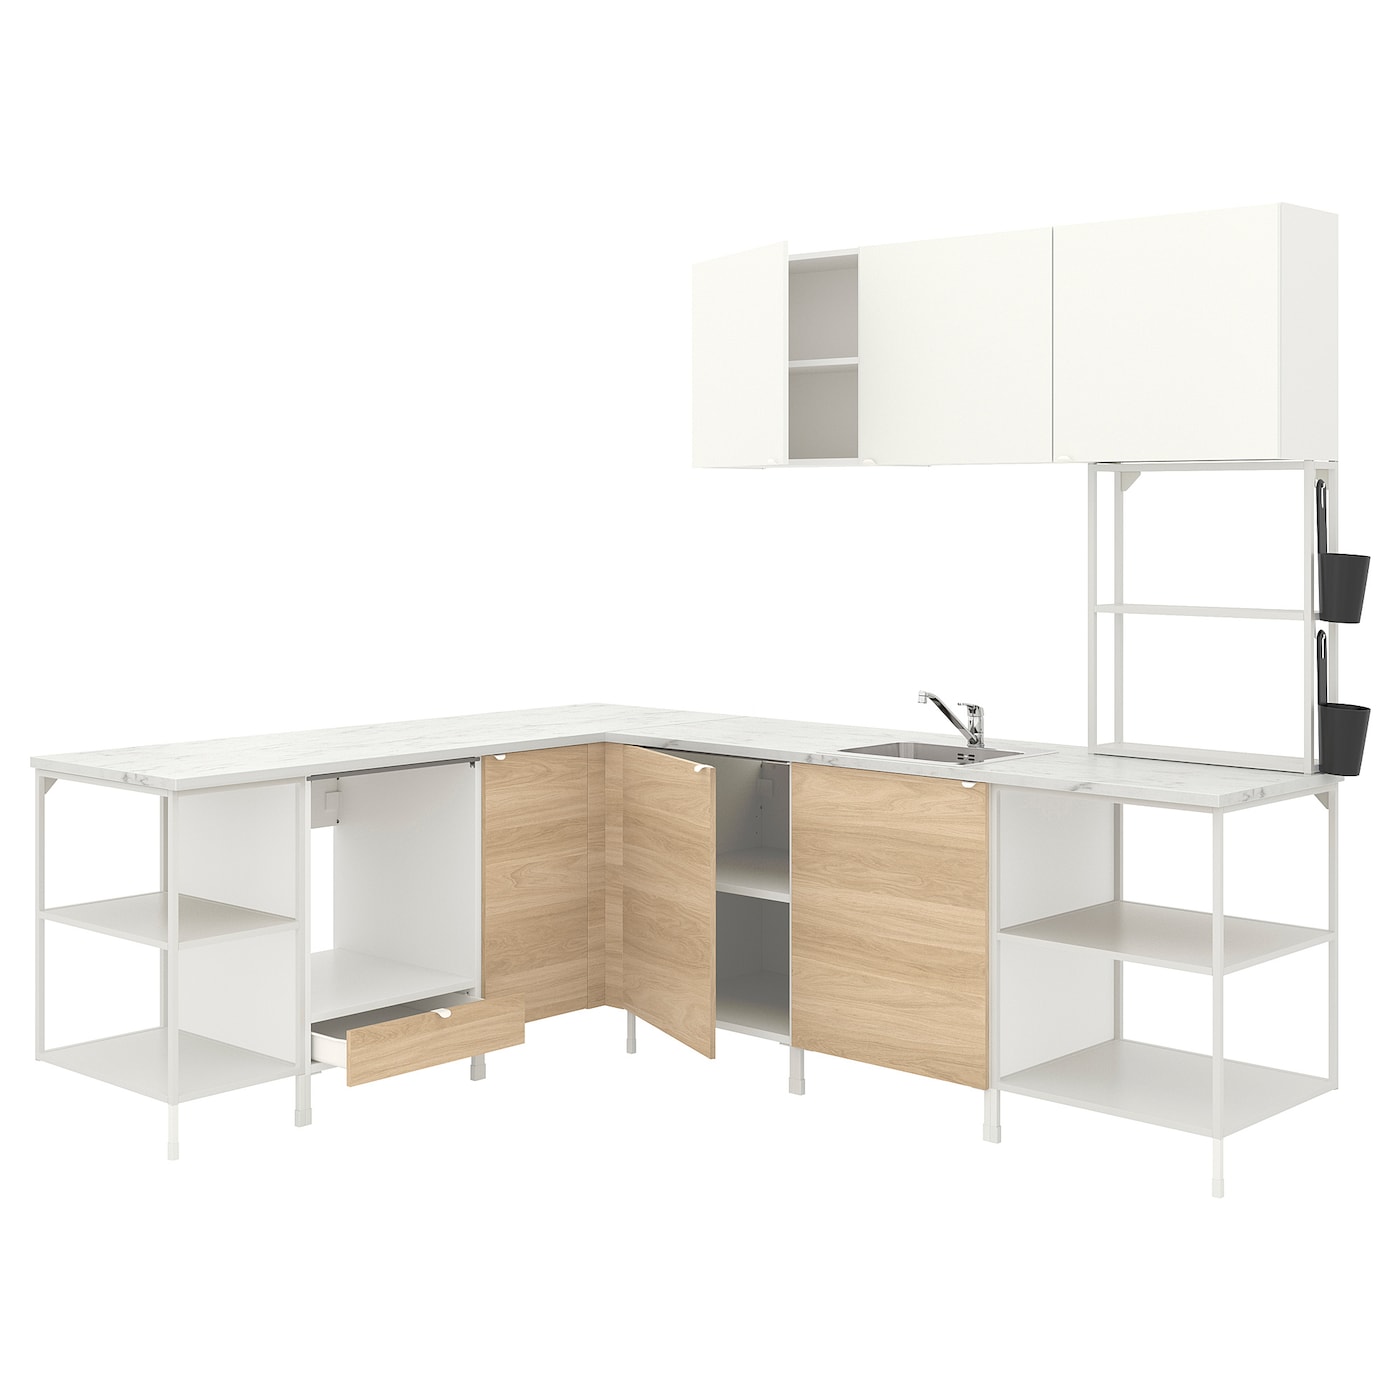 Угловой кухонный гарнитур - IKEA ENHET, 210.5х248.5х75 см, белый/имитация дуба, ЭНХЕТ ИКЕА